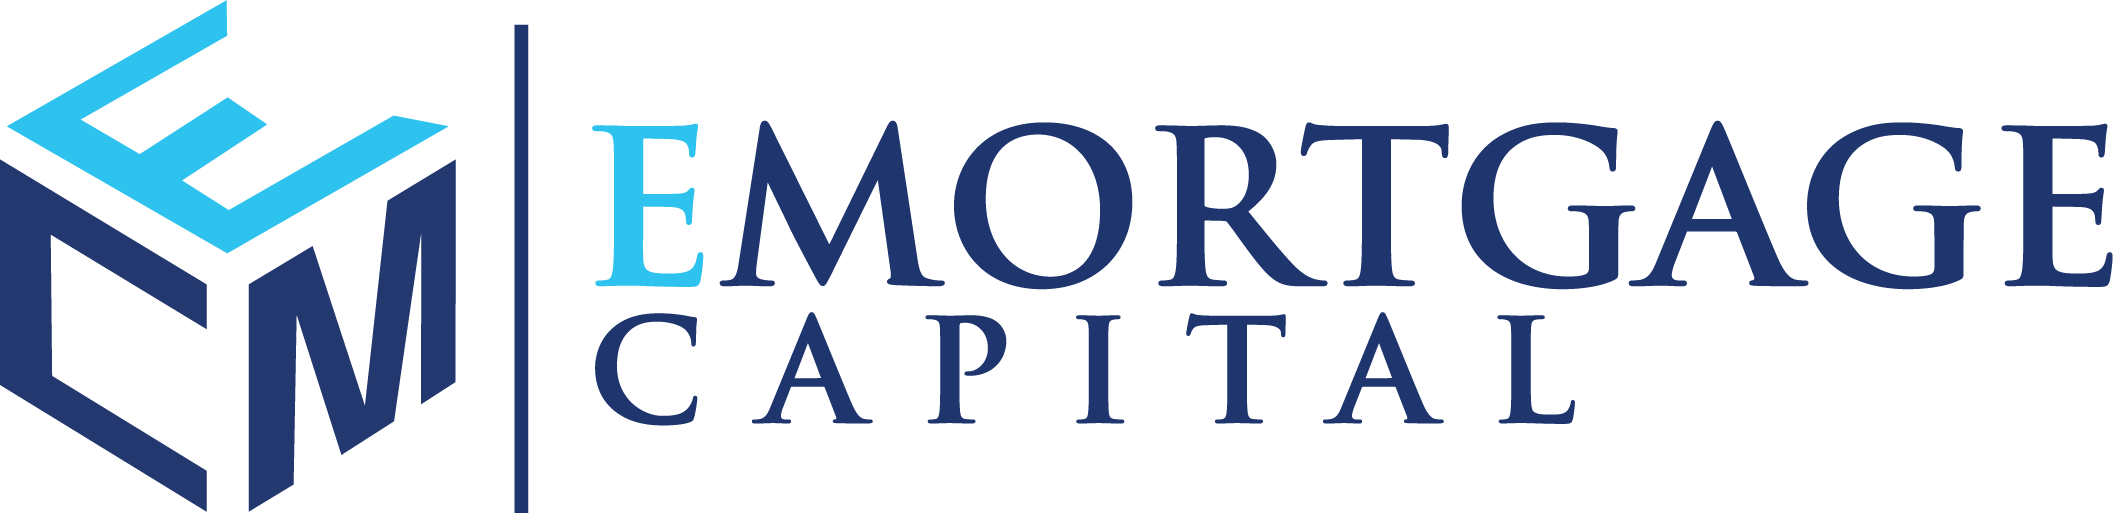 NEXA Mortgage LLC logo